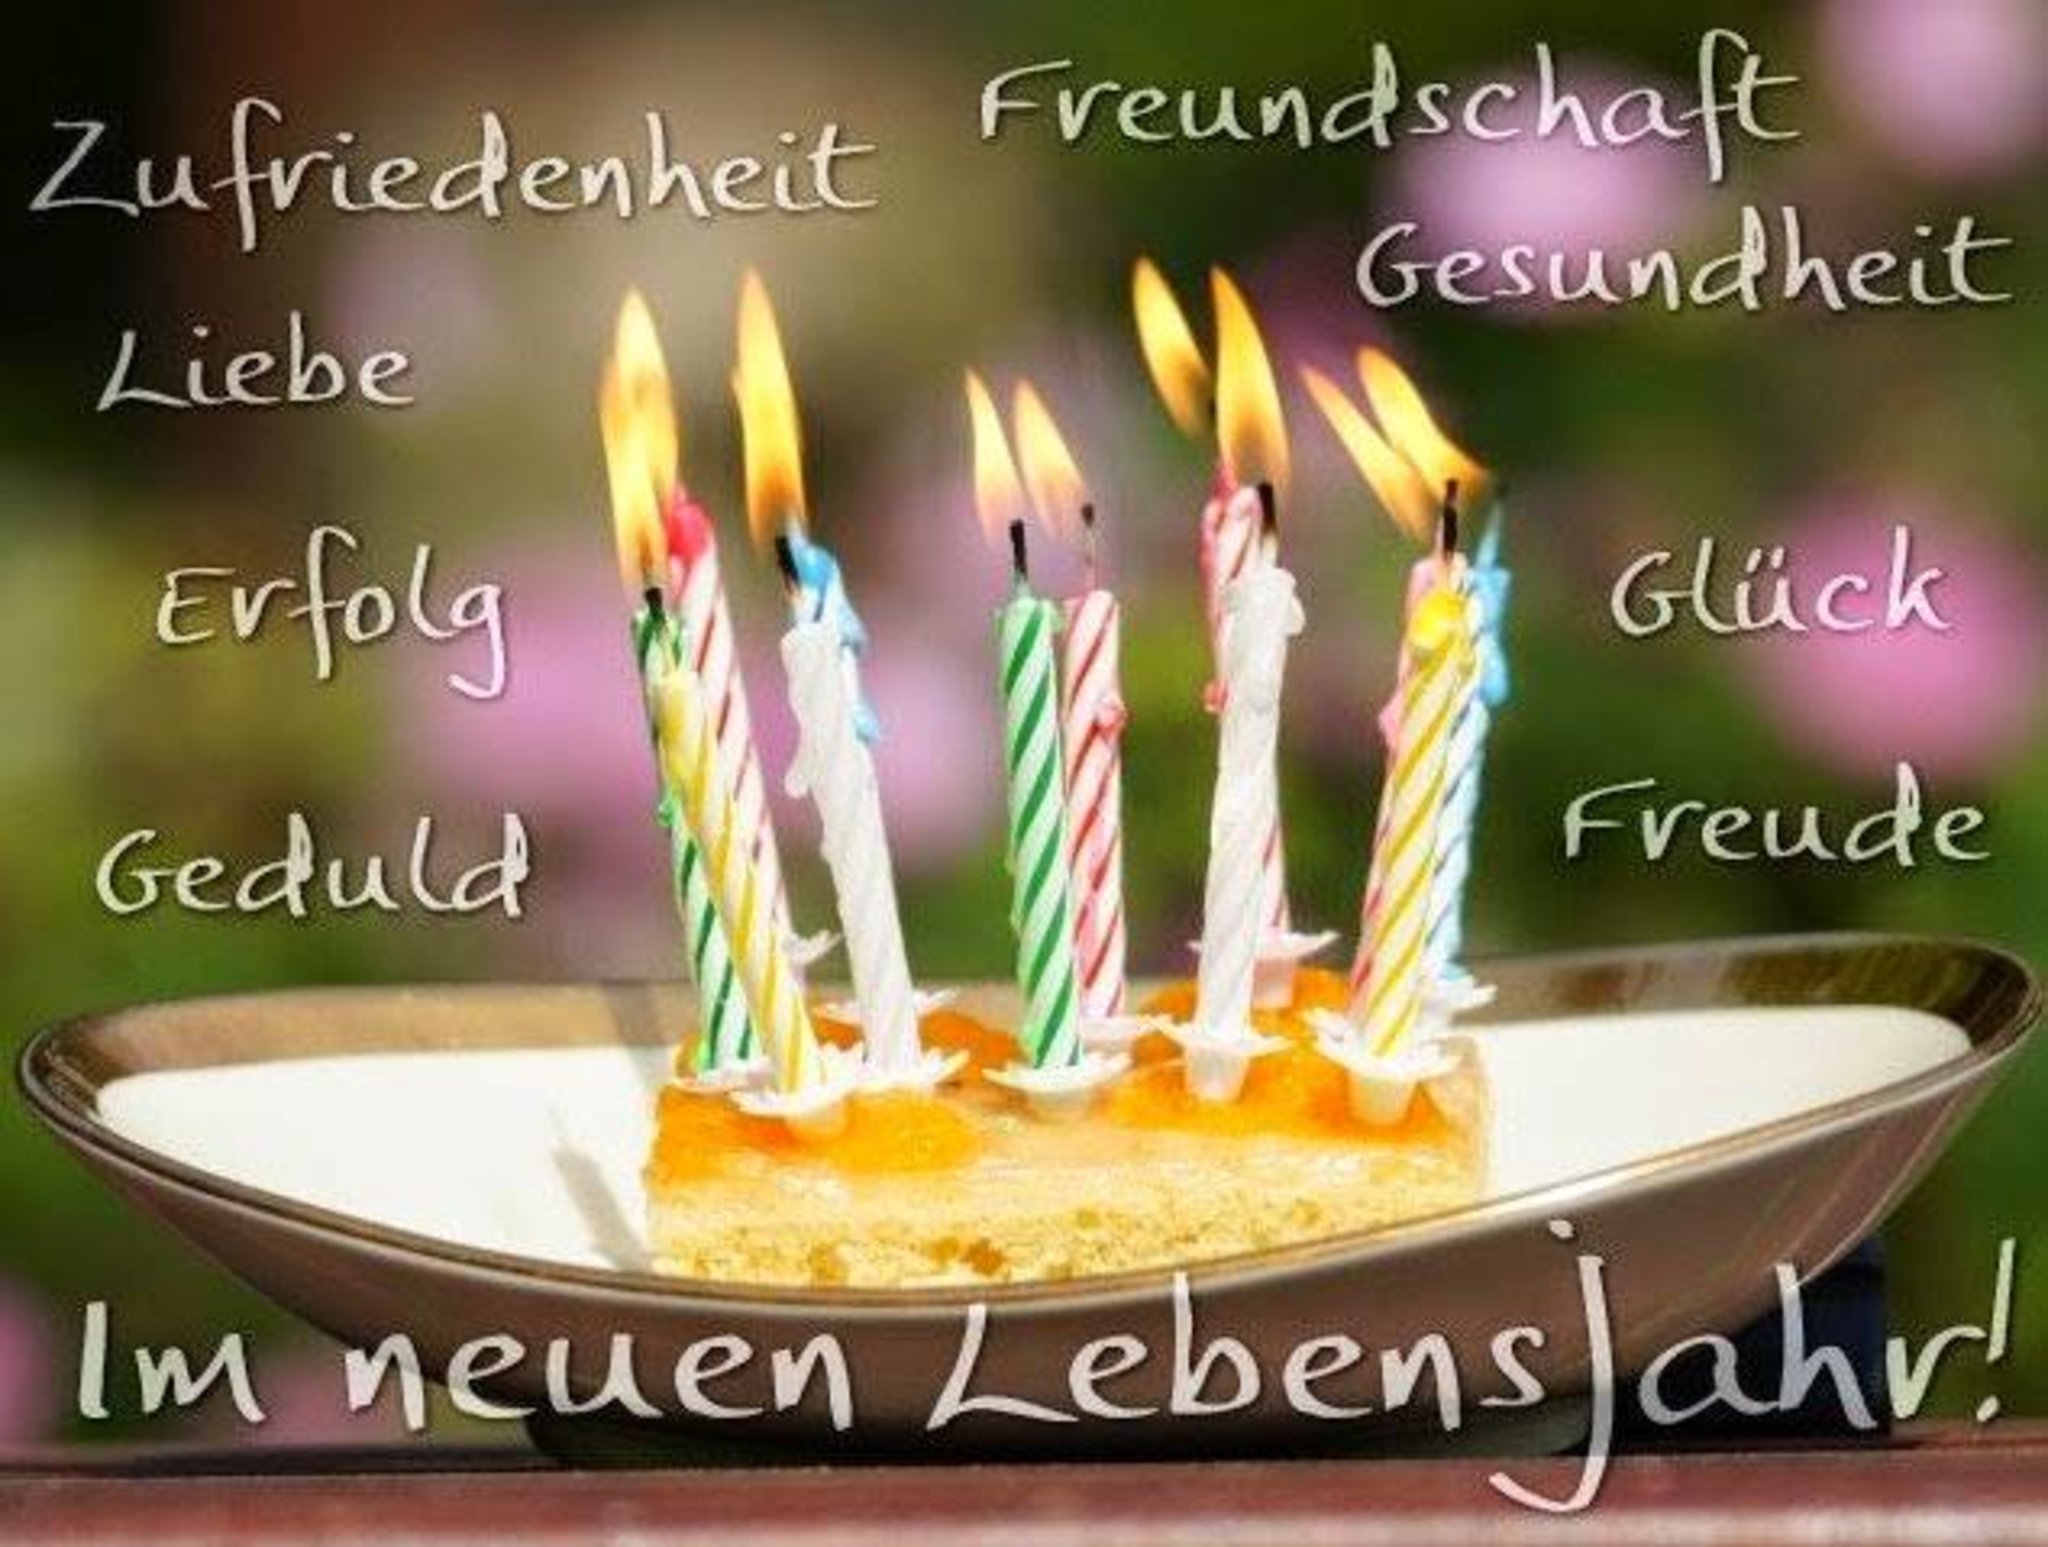 Как на немецком будет с днем рождения?